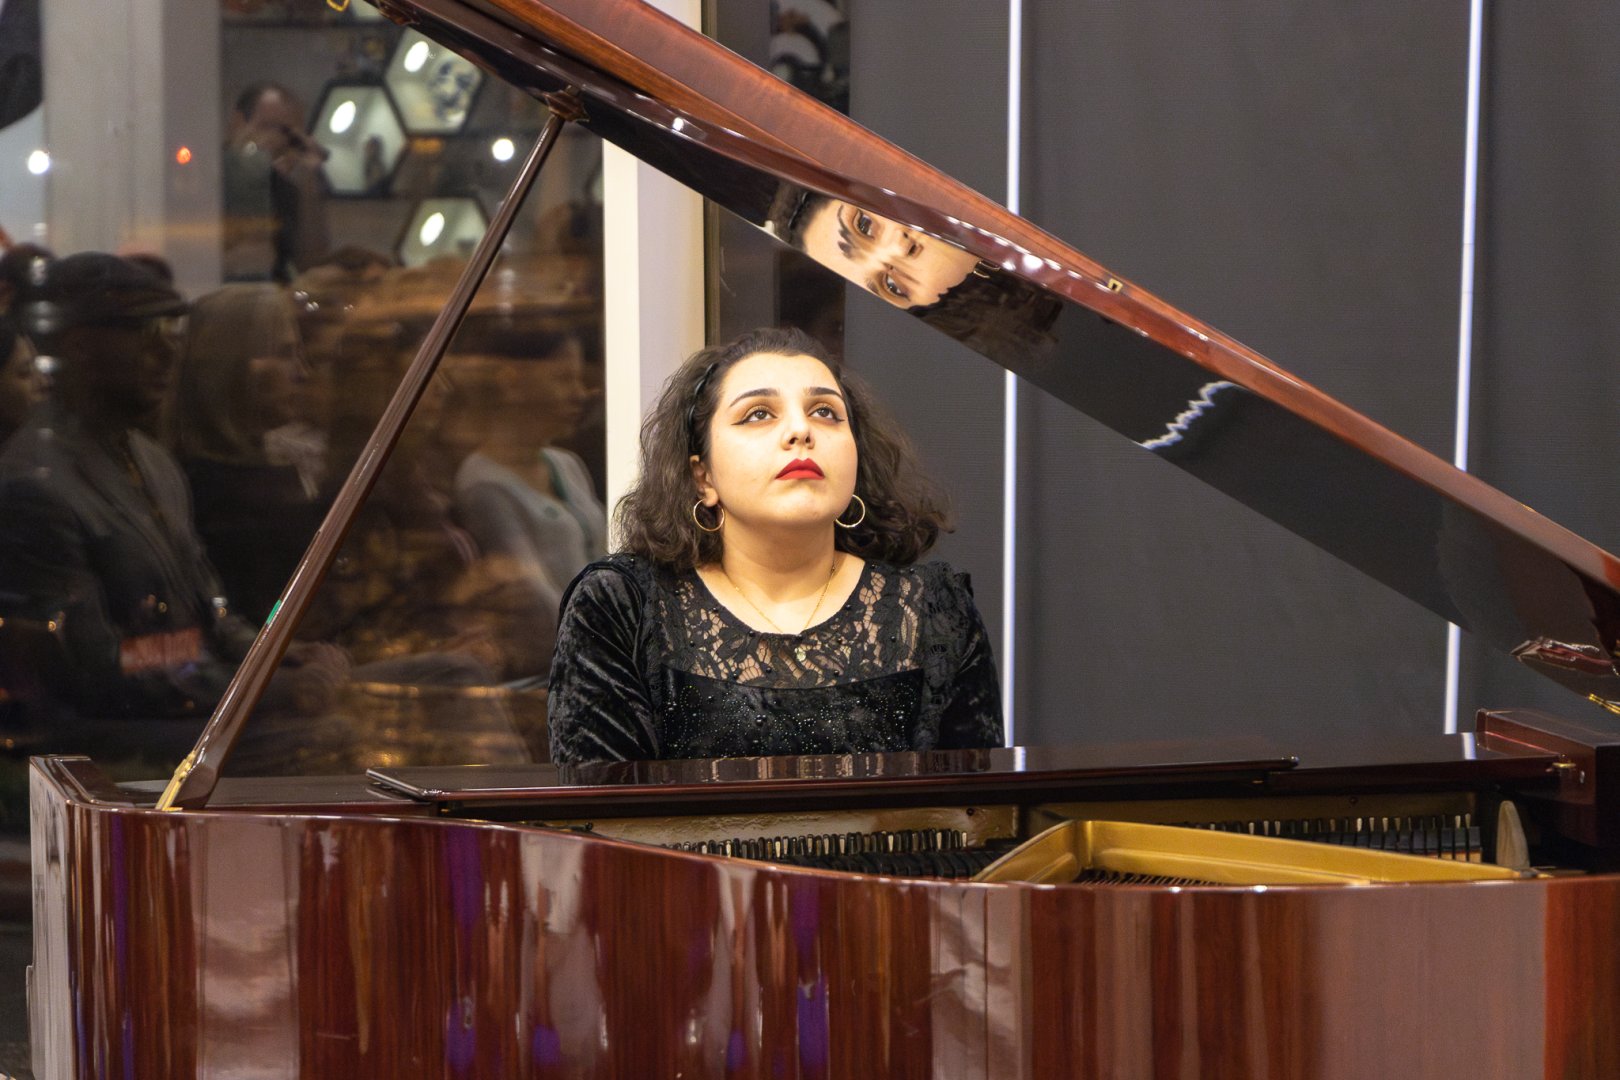 Музыкальный мир молодых талантов Кенуль Гусейновой - увлекательное путешествие  (ФОТО)